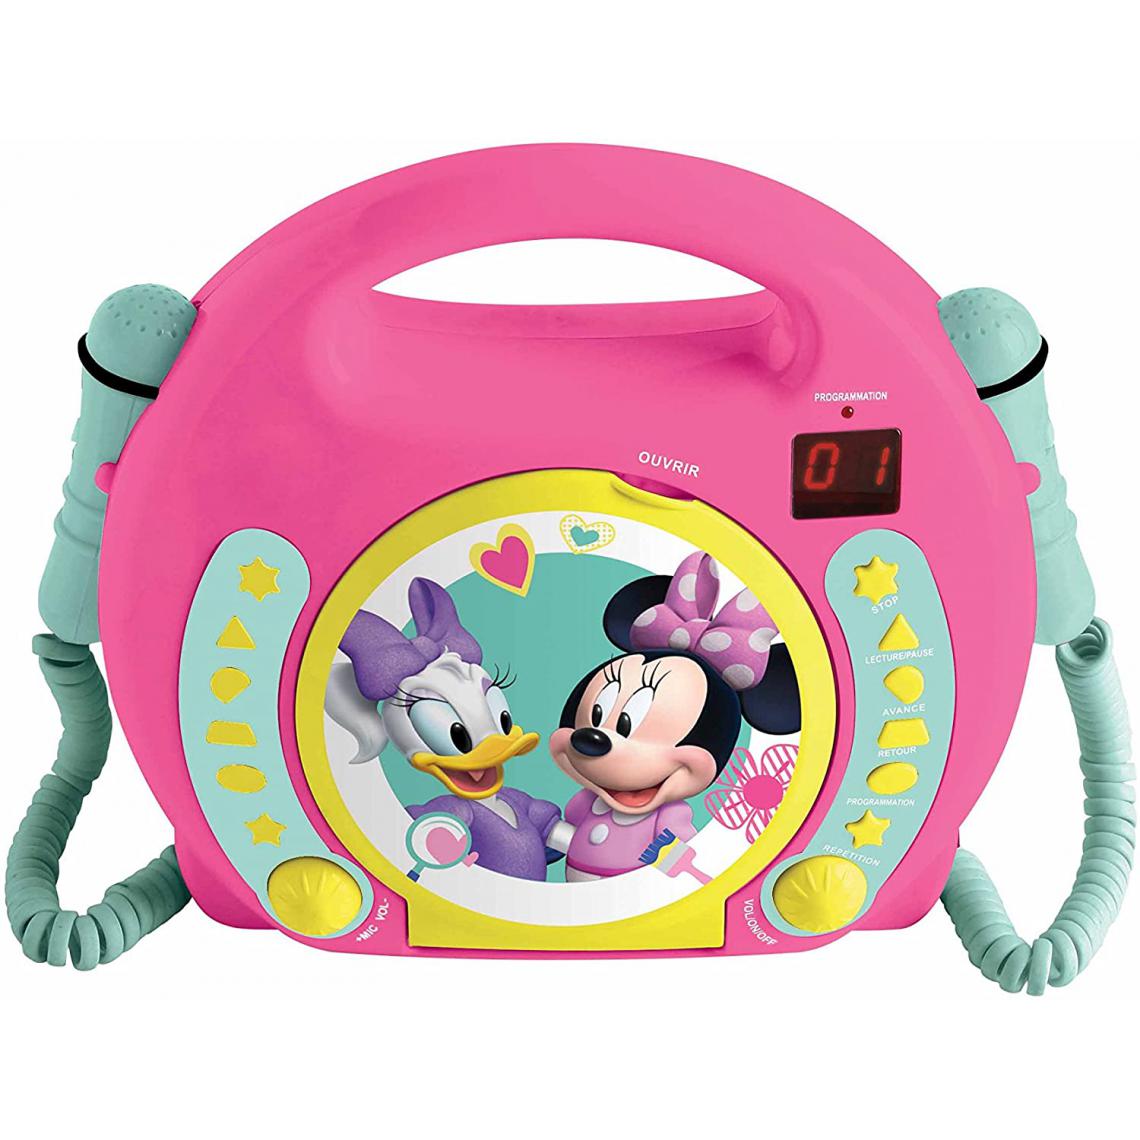 lexibook - Lecteur CD pour enfant avec 2 microphones à piles Disney Junior Minnie Mouse rose - Radio, lecteur CD/MP3 enfant